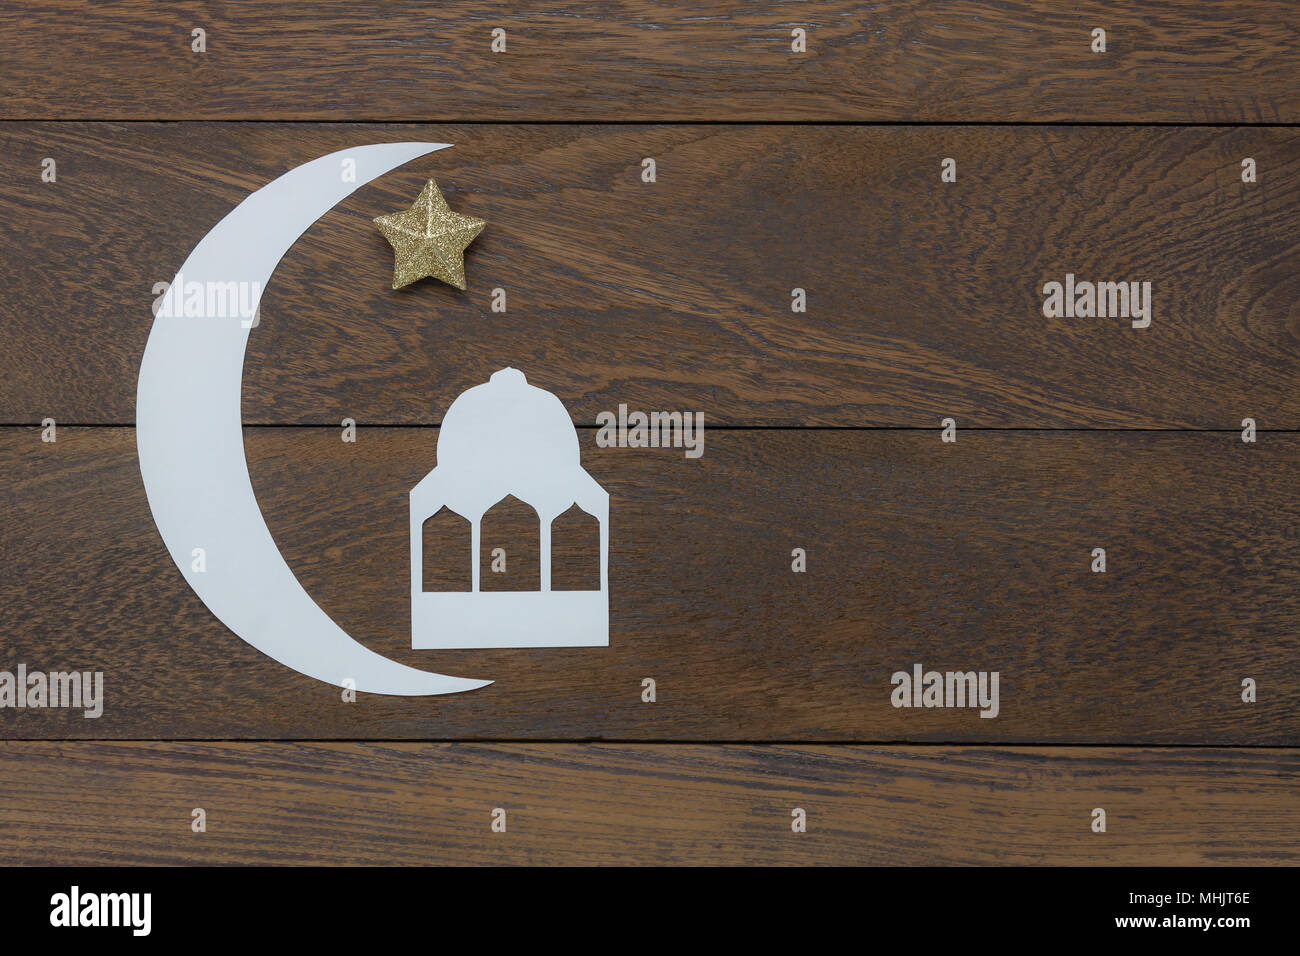 Table top visualizza immagine aerea di decorazioni Ramadan Kareem holiday sfondo.piatto carta laici carino il bianco luna & stella d'oro con castello islamico.Oggetto Foto Stock